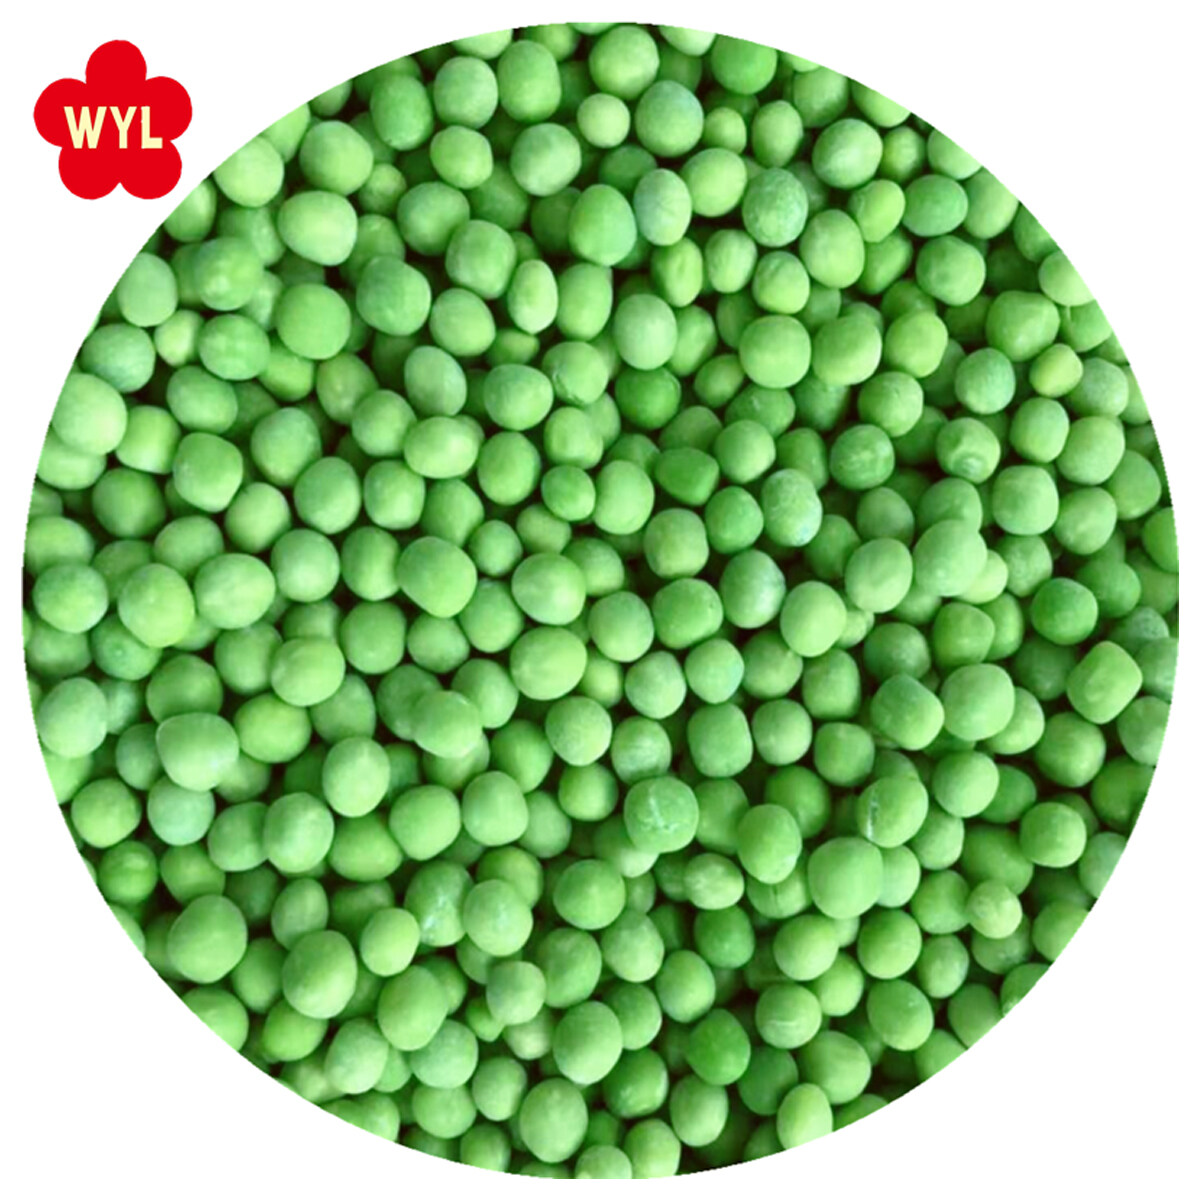 冷凍綠豌豆品牌品種A典型的綠色散裝包裝